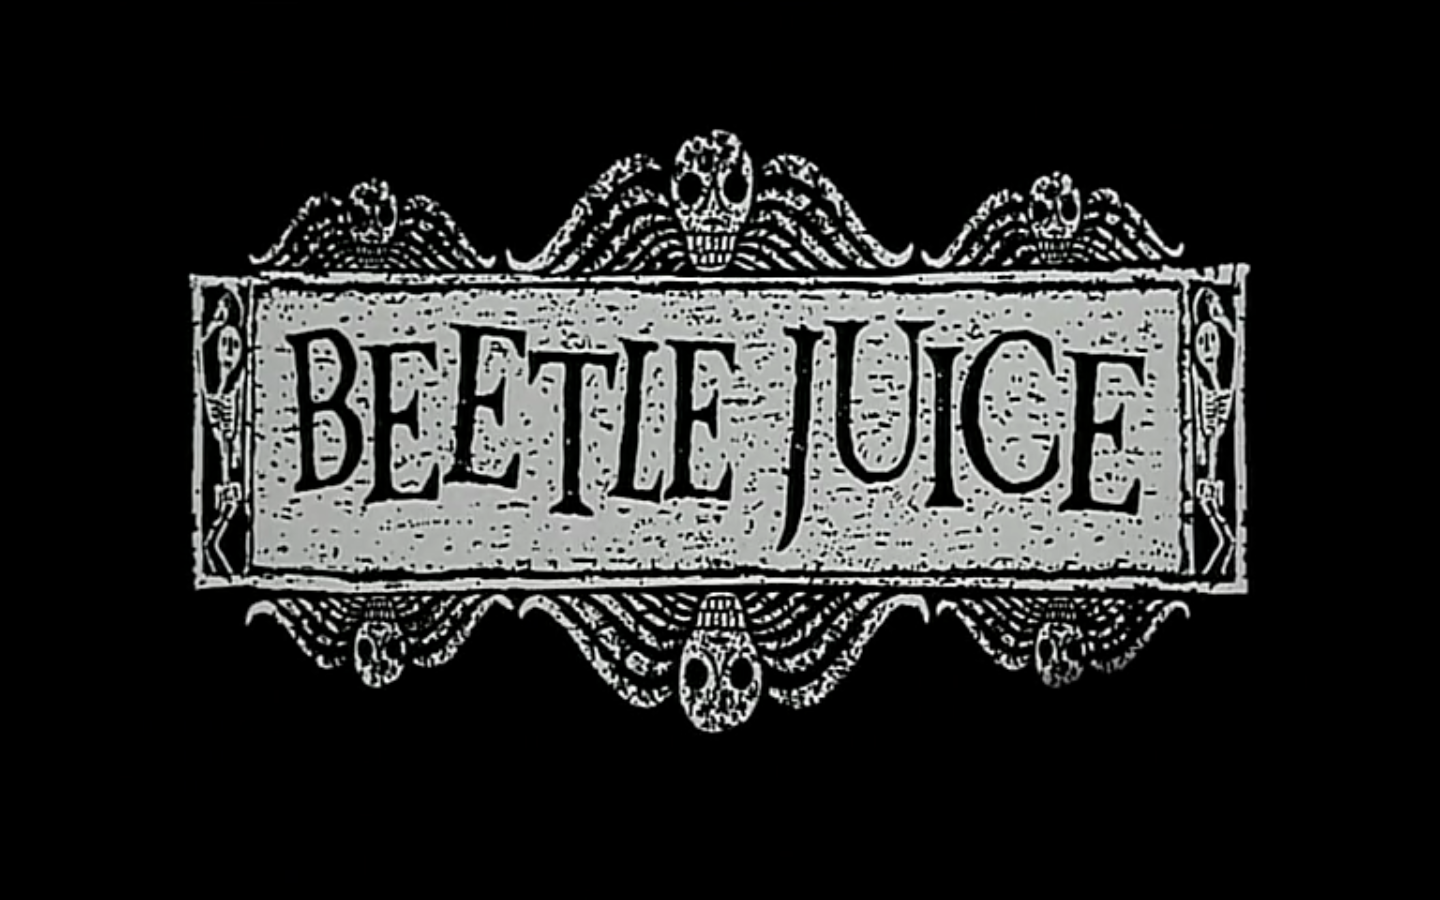 beetlejuice title